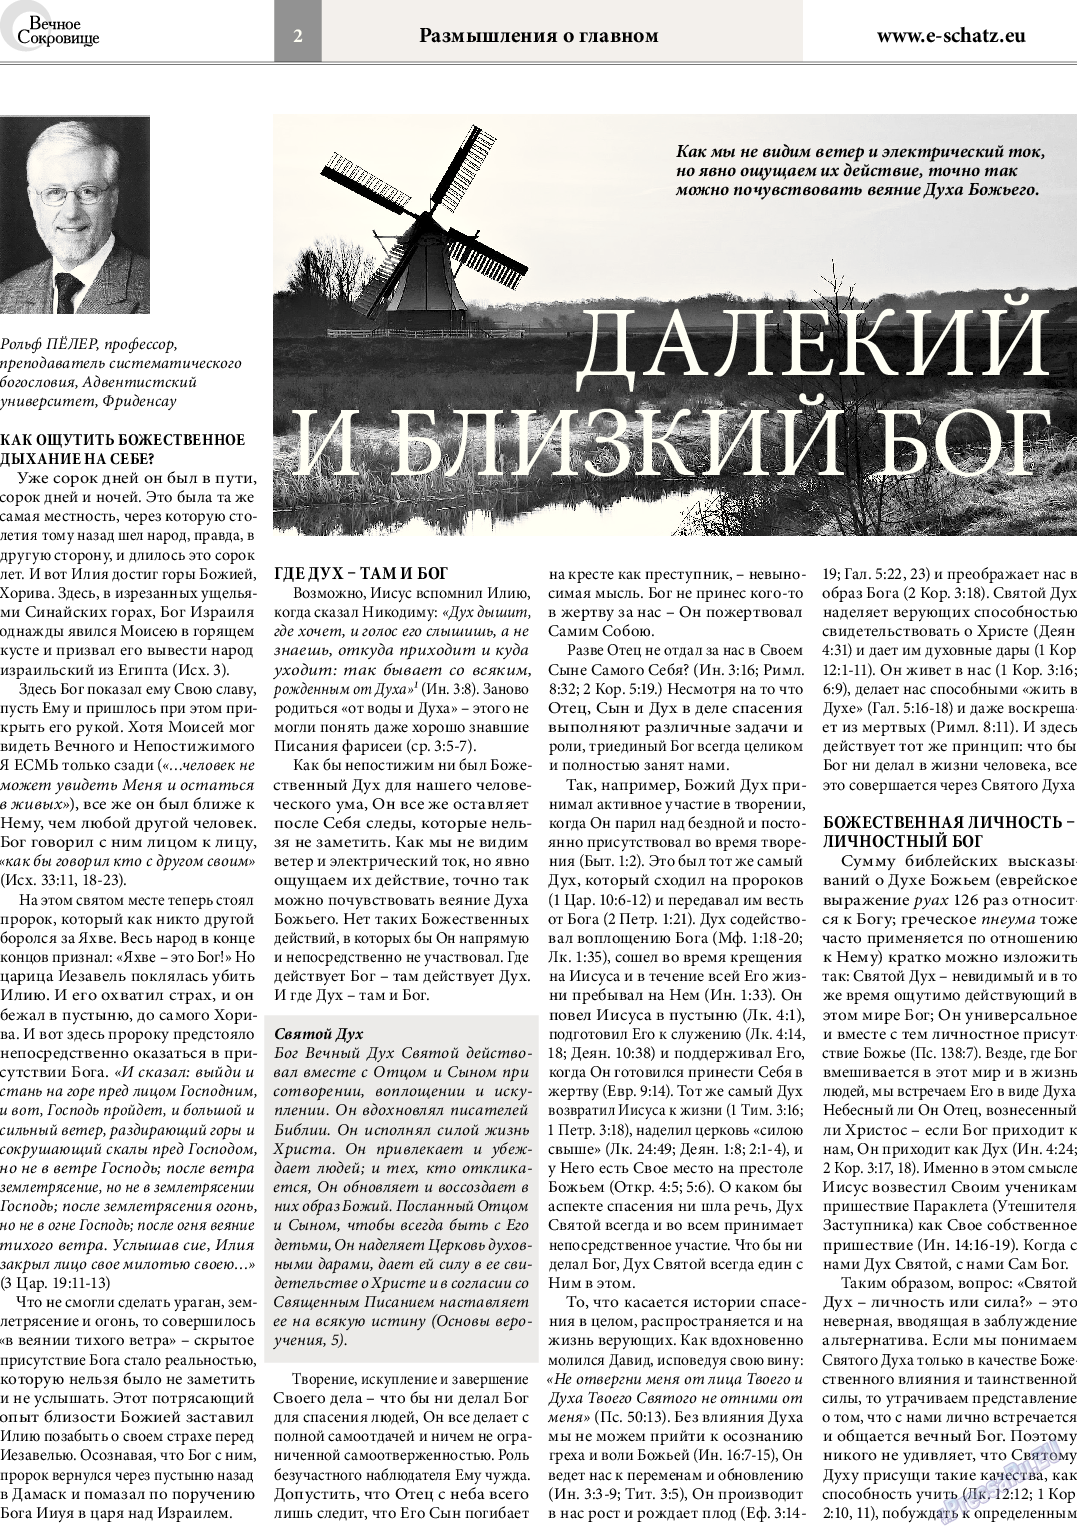 Вечное сокровище, газета. 2014 №3 стр.2